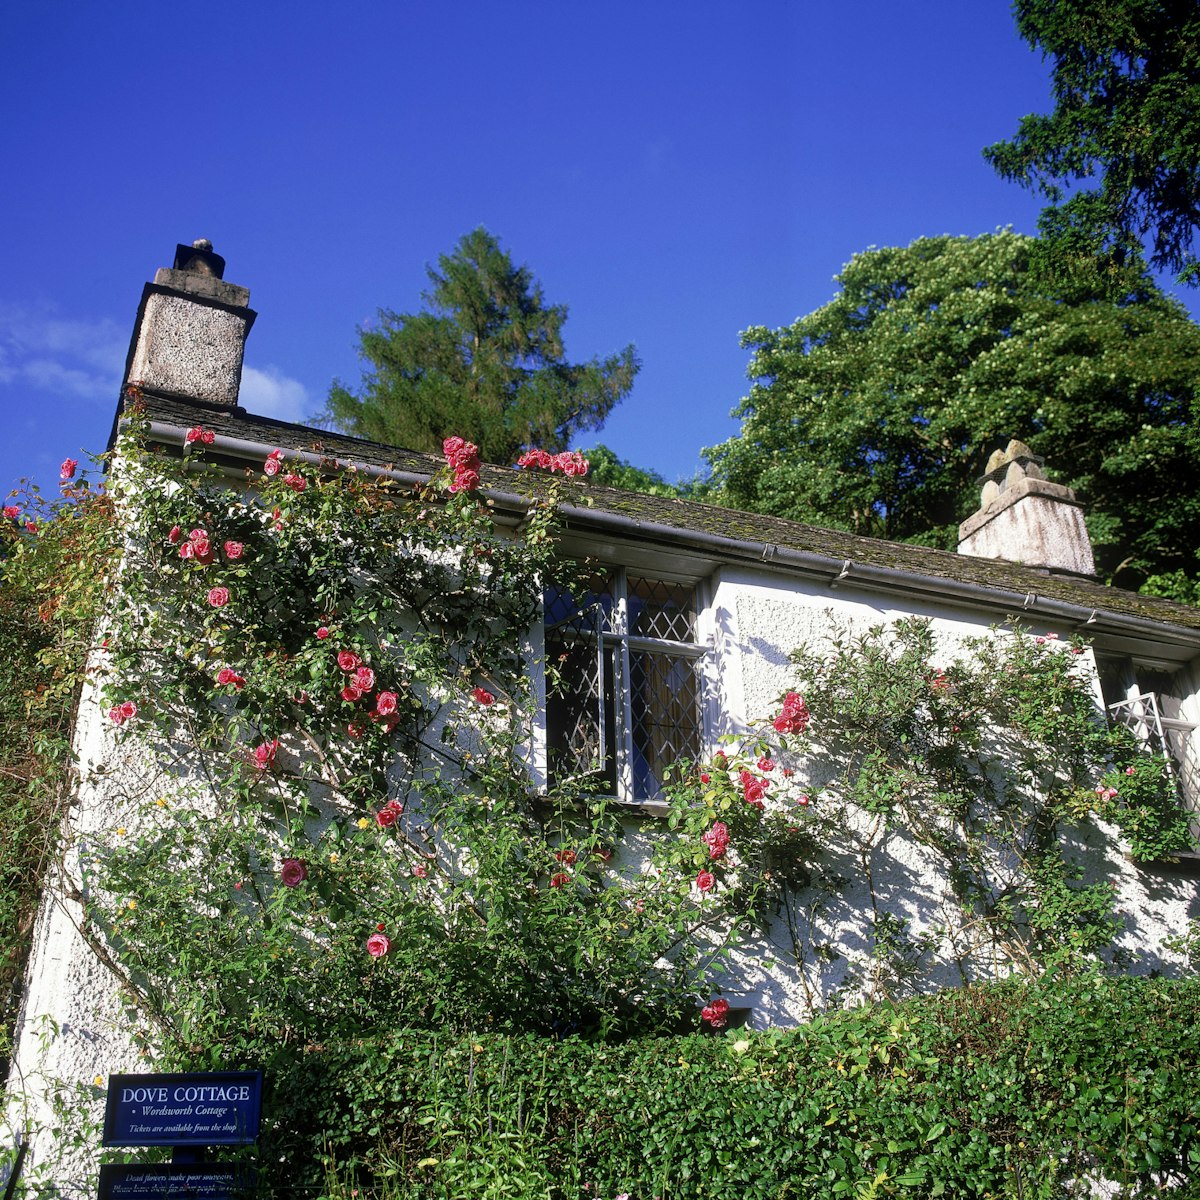 Dove Cottage, Grasmere, Cumbria, UK